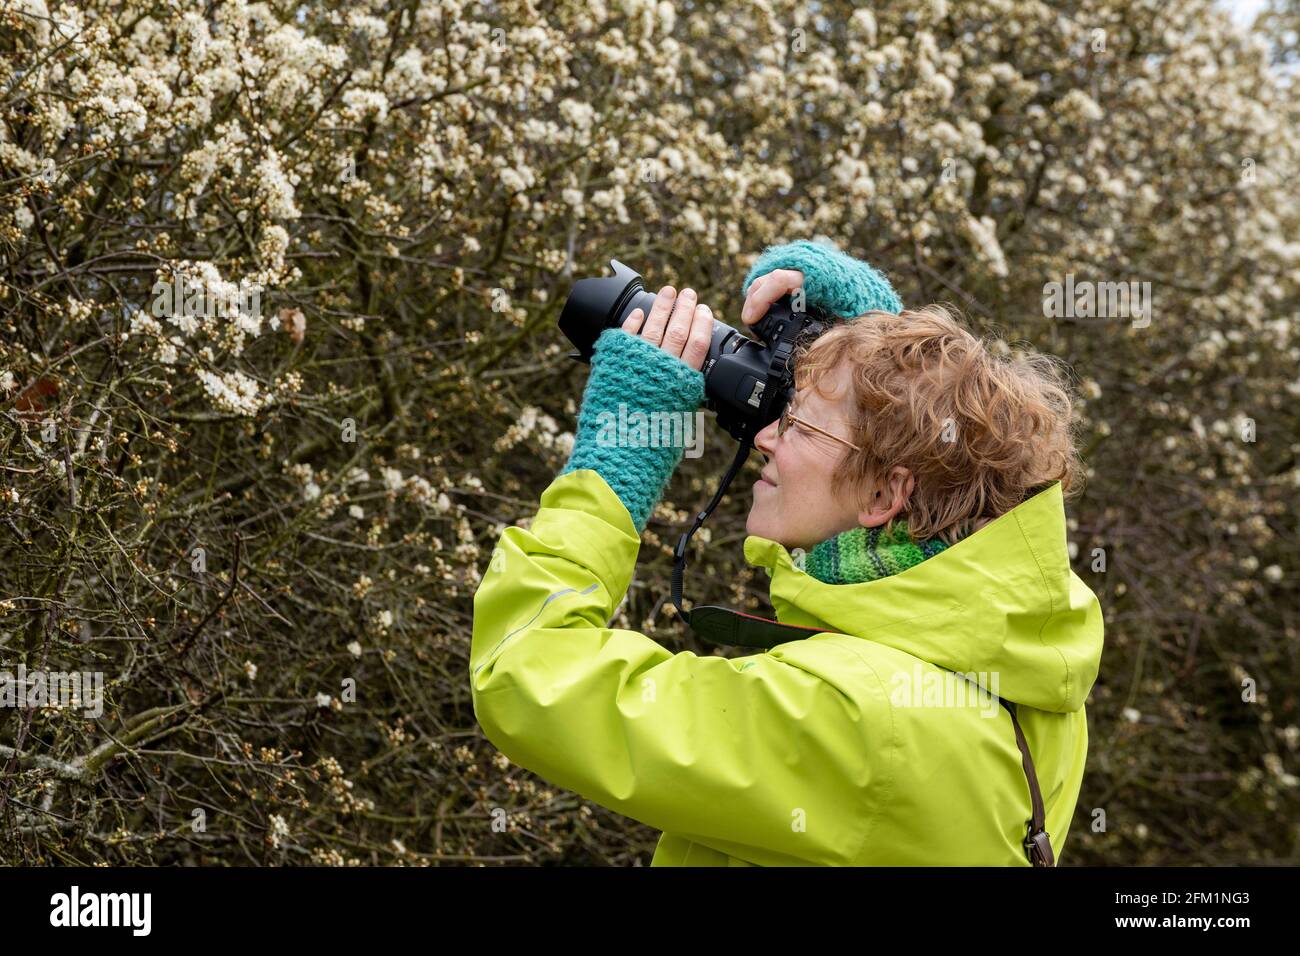 Mujer tomando fotos, el florecimiento de la espina negra (Prunus spinosa), la Reserva Natural de Gelting Birk, la Bahía de Gelting, Schleswig-Holstein, Alemania Foto de stock